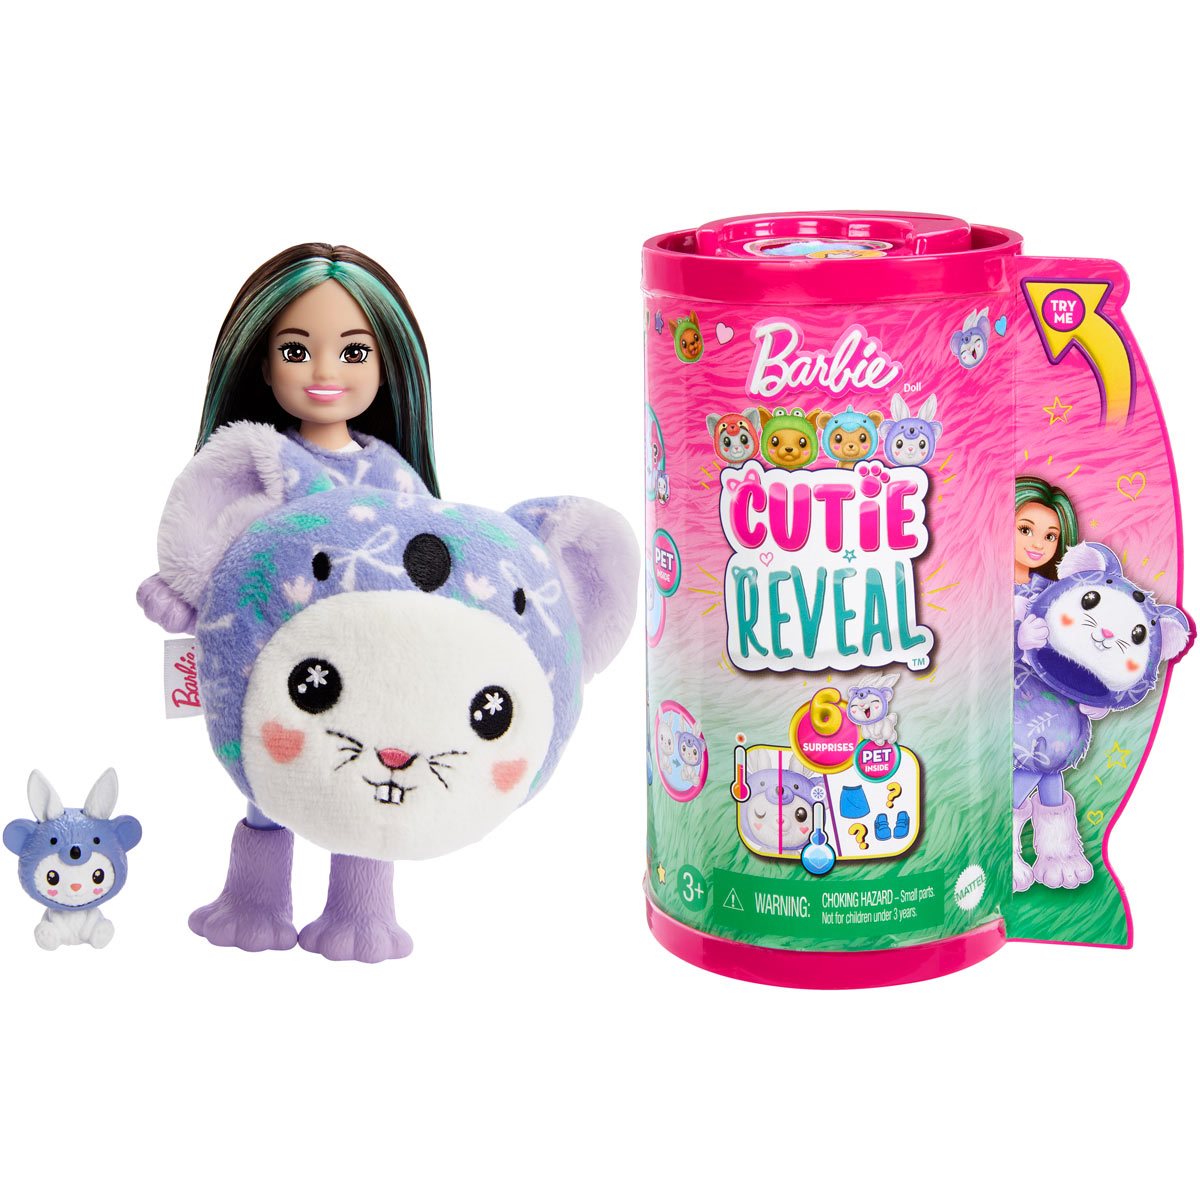 Barbie Cutie Reveal Chelsea Bunny as Koala Doll